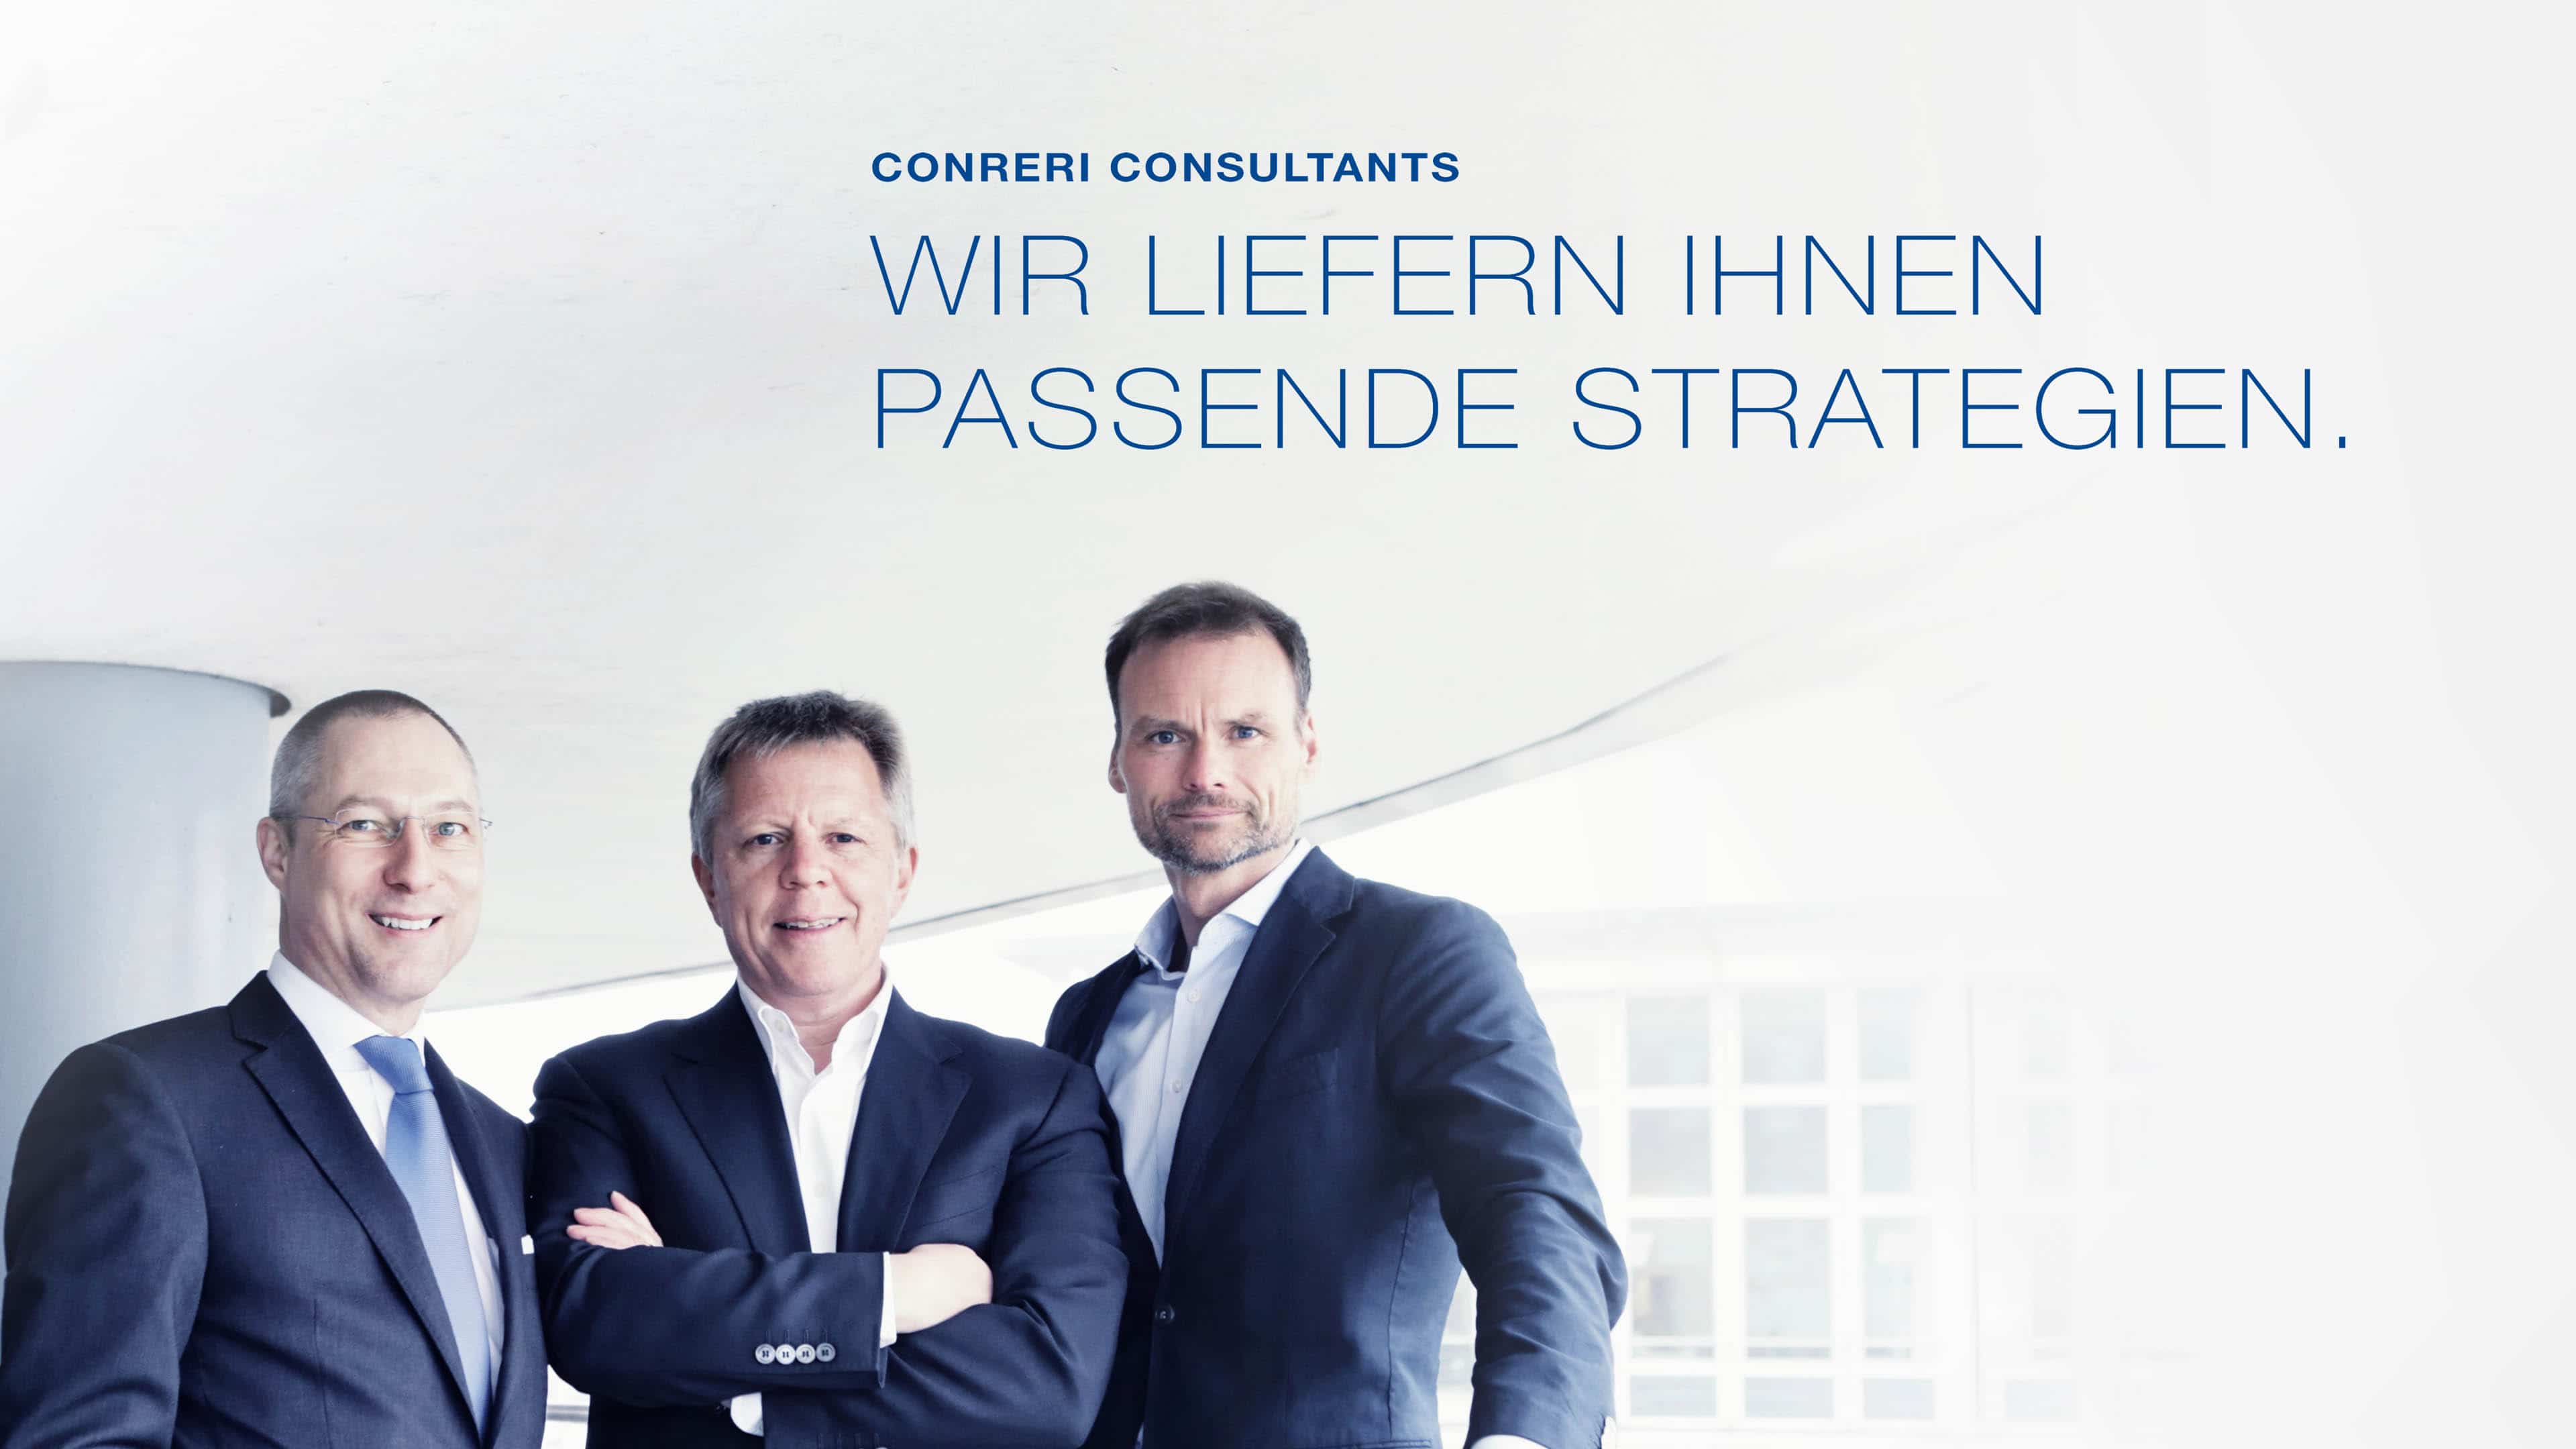 Drei Männer im blauen Anzug und Text "Conreri Consultants. Wir liefern Ihnen passende Strategien."